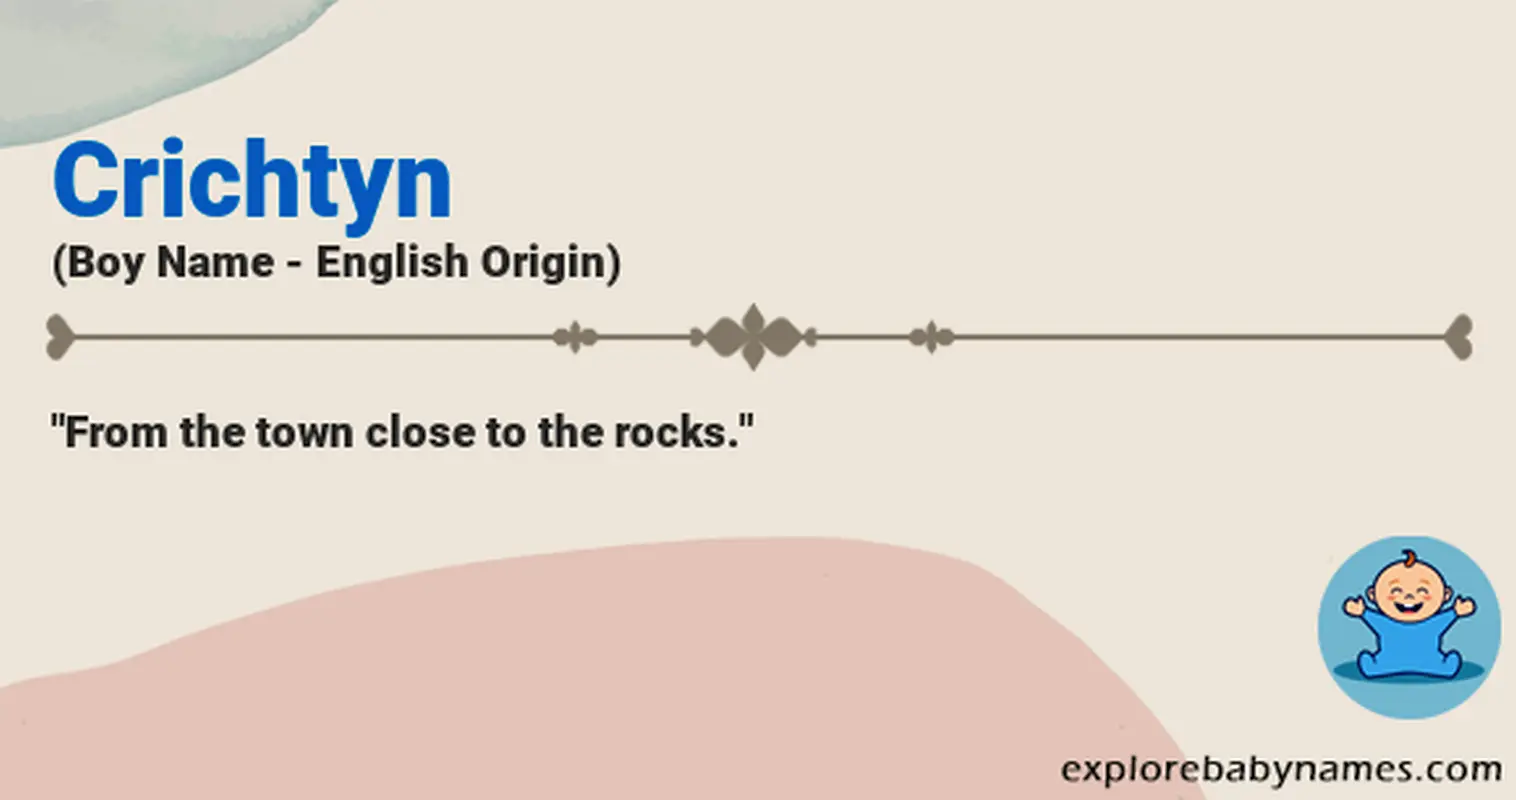 Meaning of Crichtyn